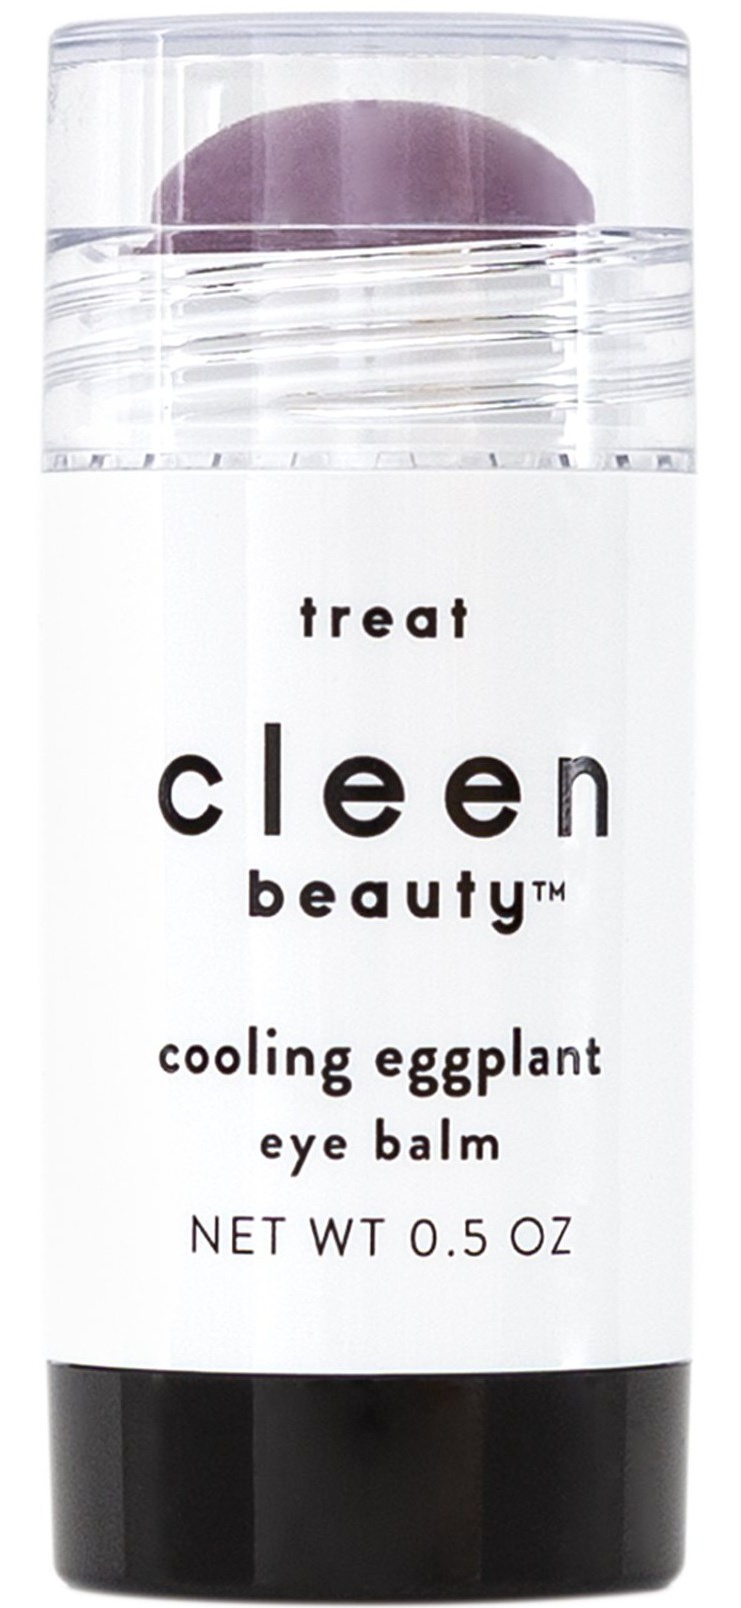 cleen beauty Cooling Eggplant Eye Balm